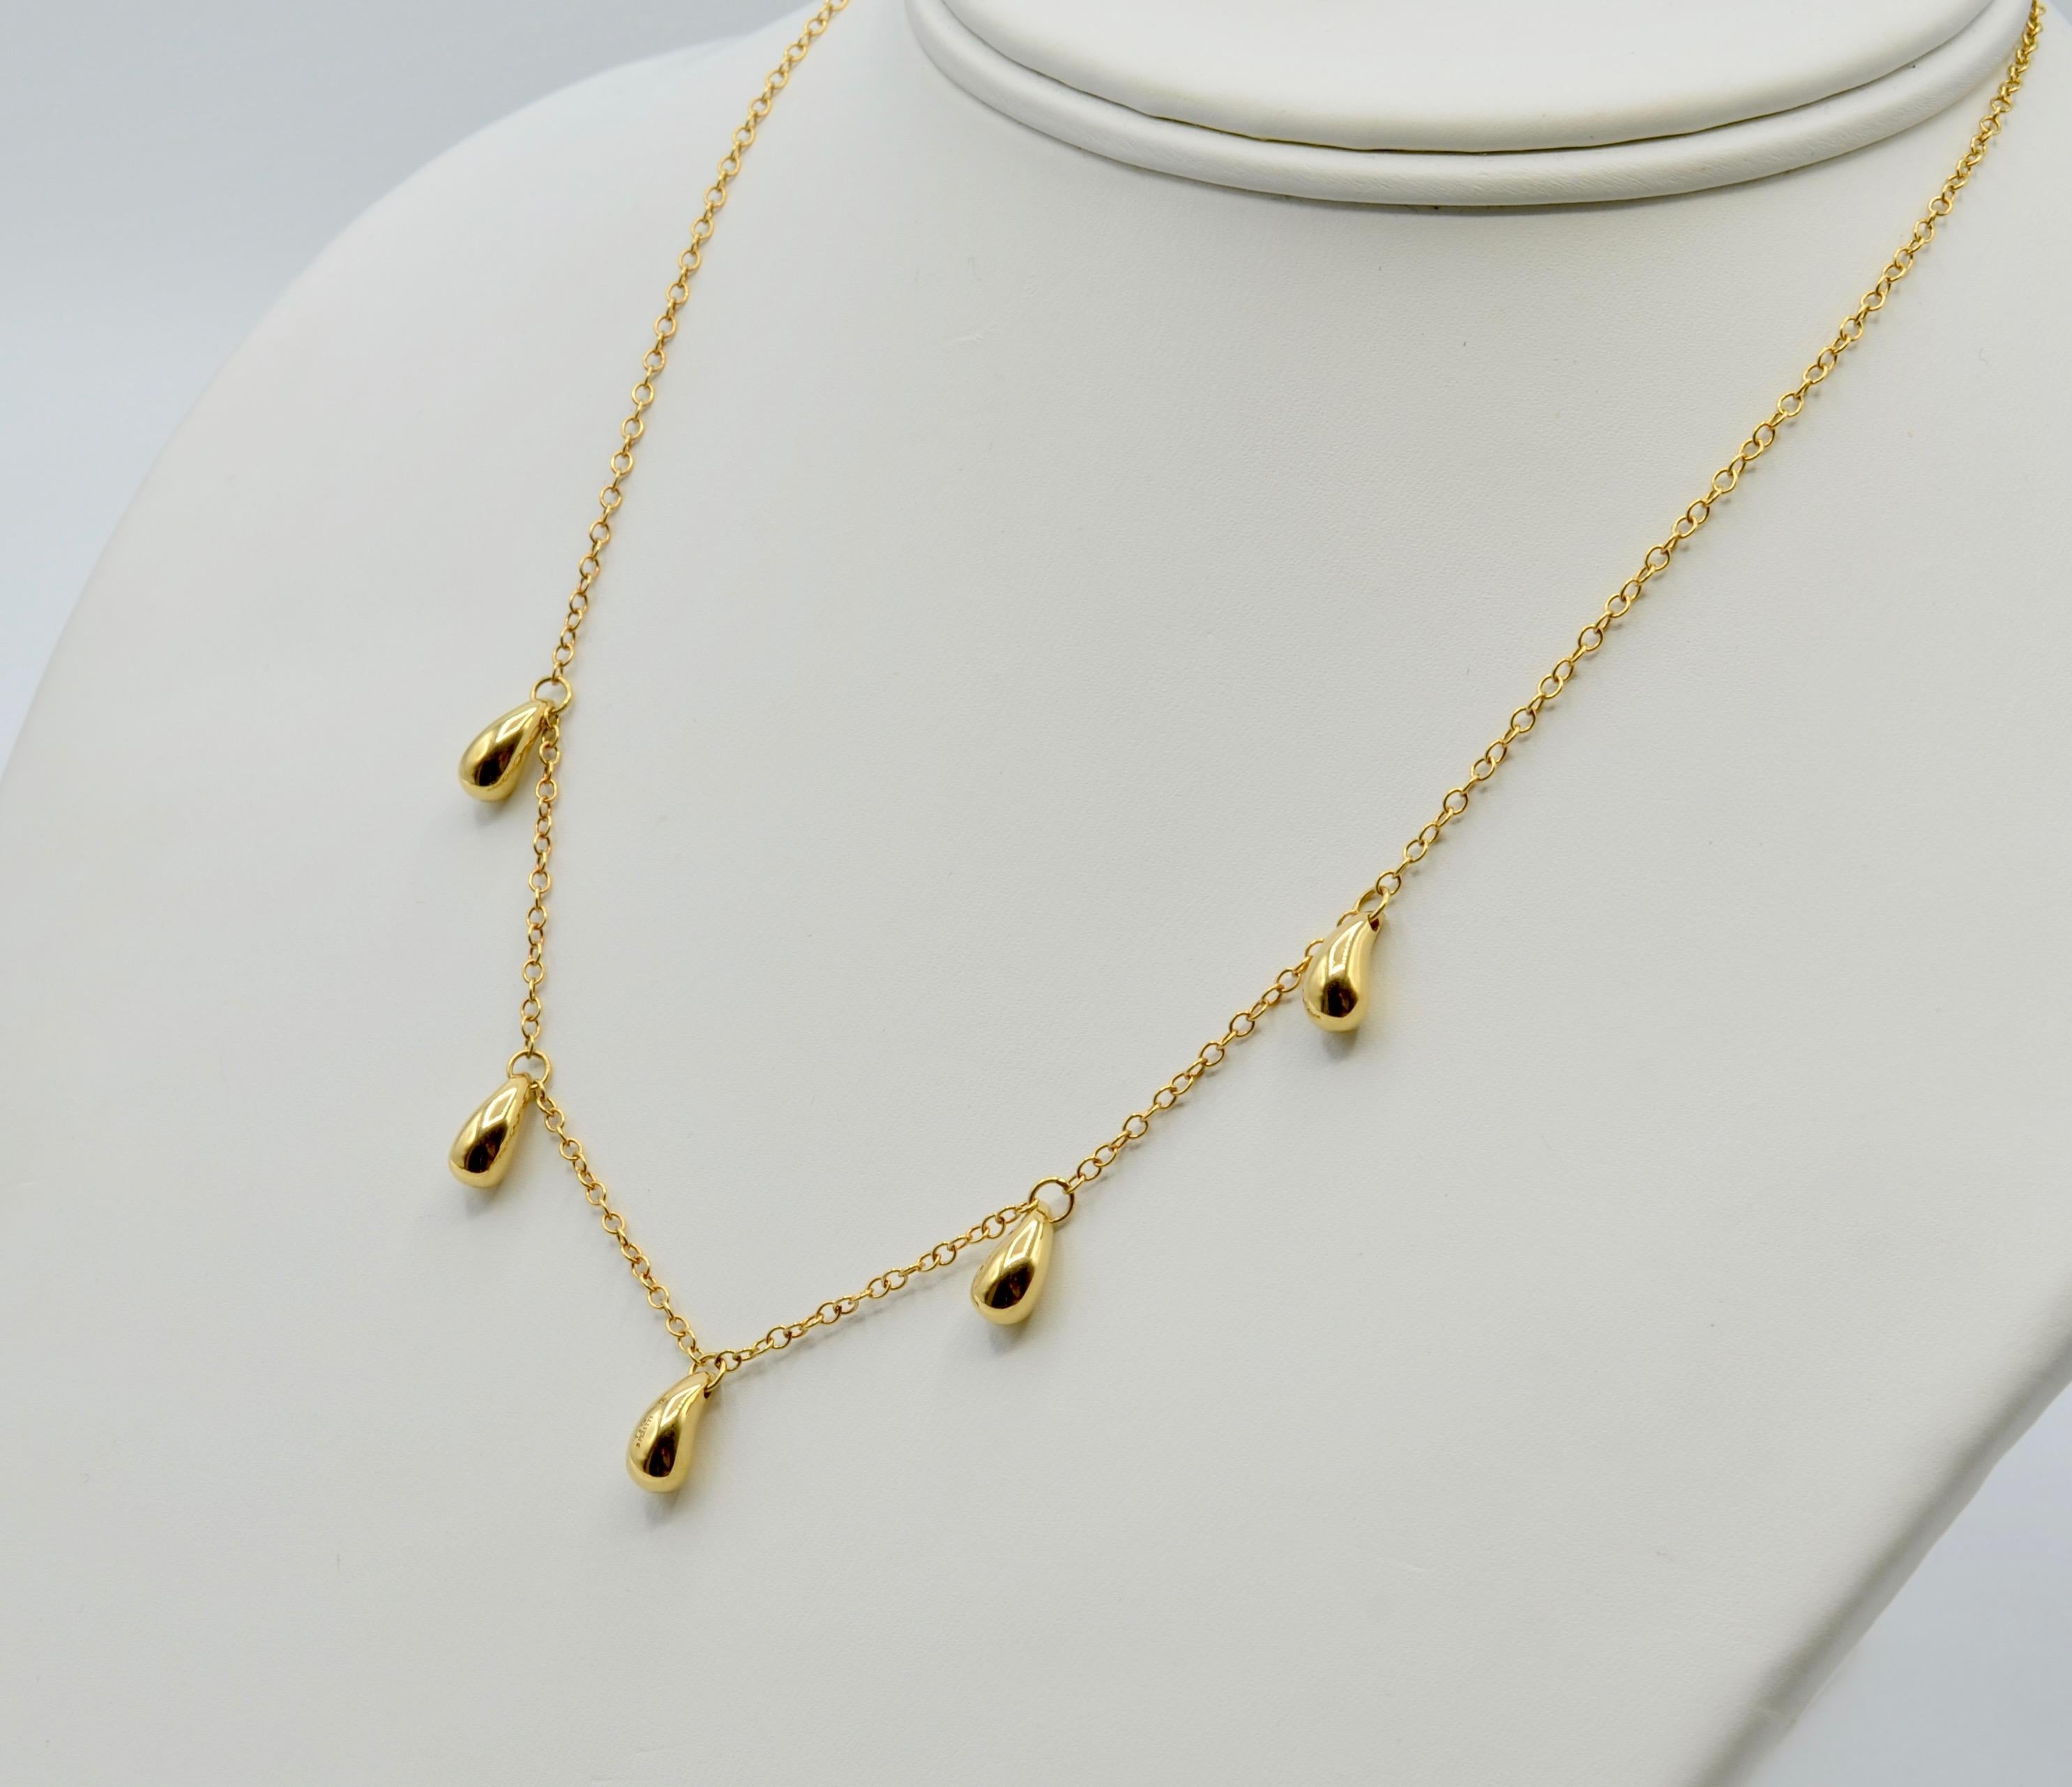 Ce collier emblématique d'Elsa Peretti forme une magnifique auréole autour de votre cou. Les 